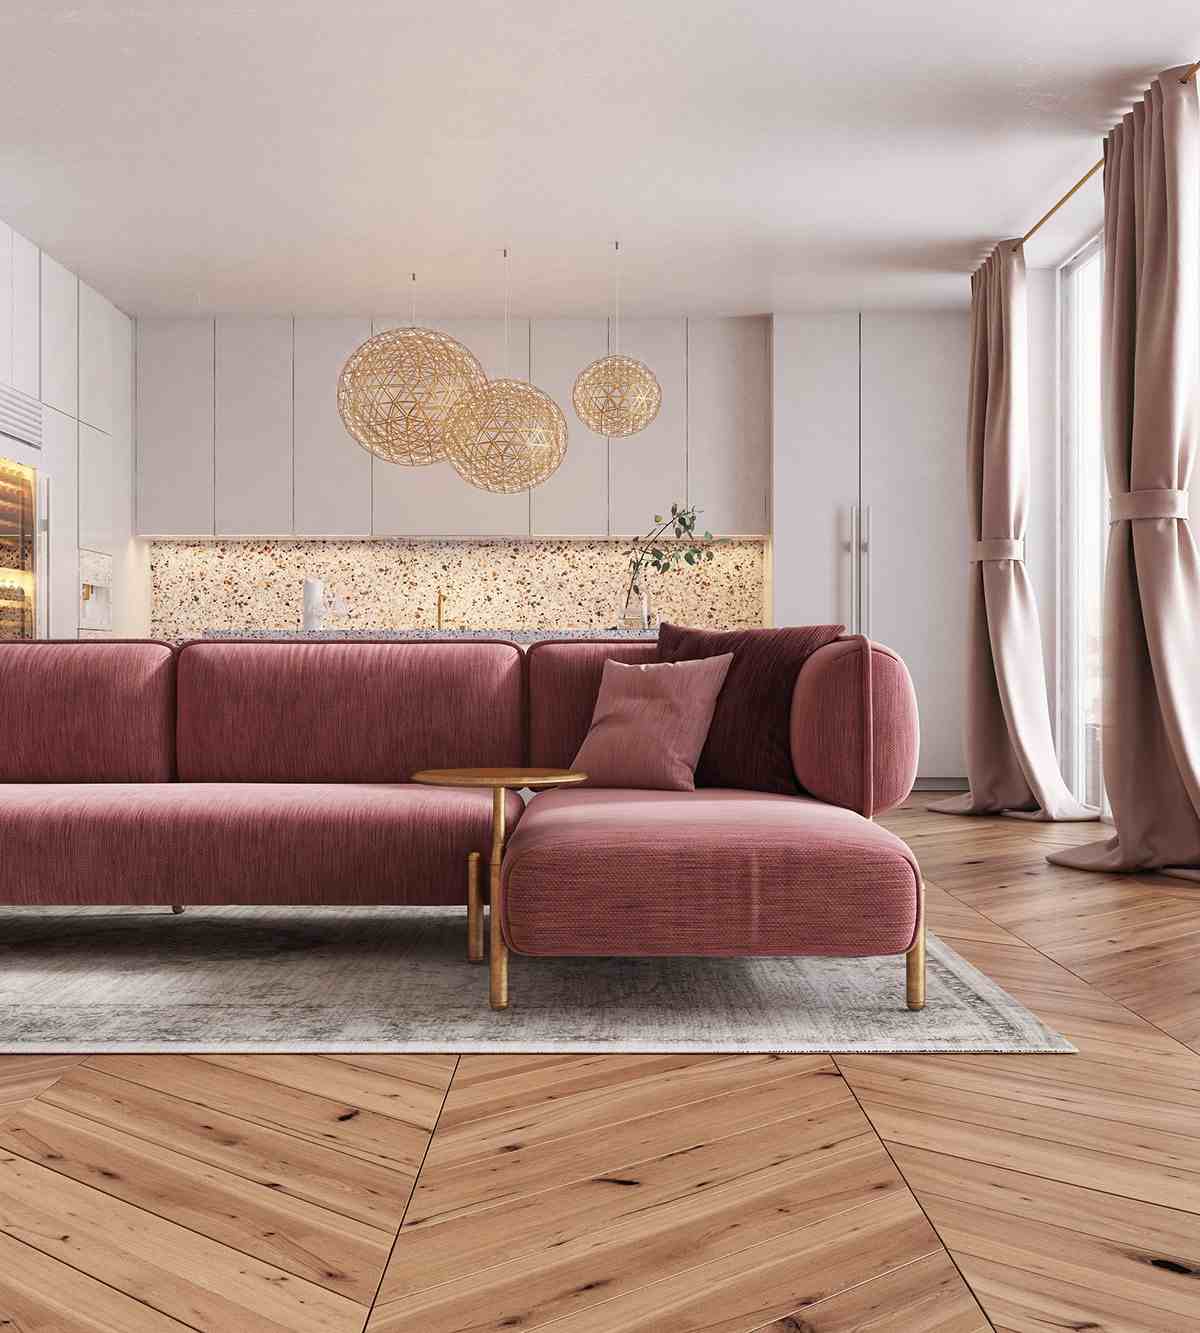 تجمع الأريكة الوردية في طراز السبعينيات مع المطبخ الحديث والجدار الخلفي للمطبخ المصنوع من مادة التيرازو